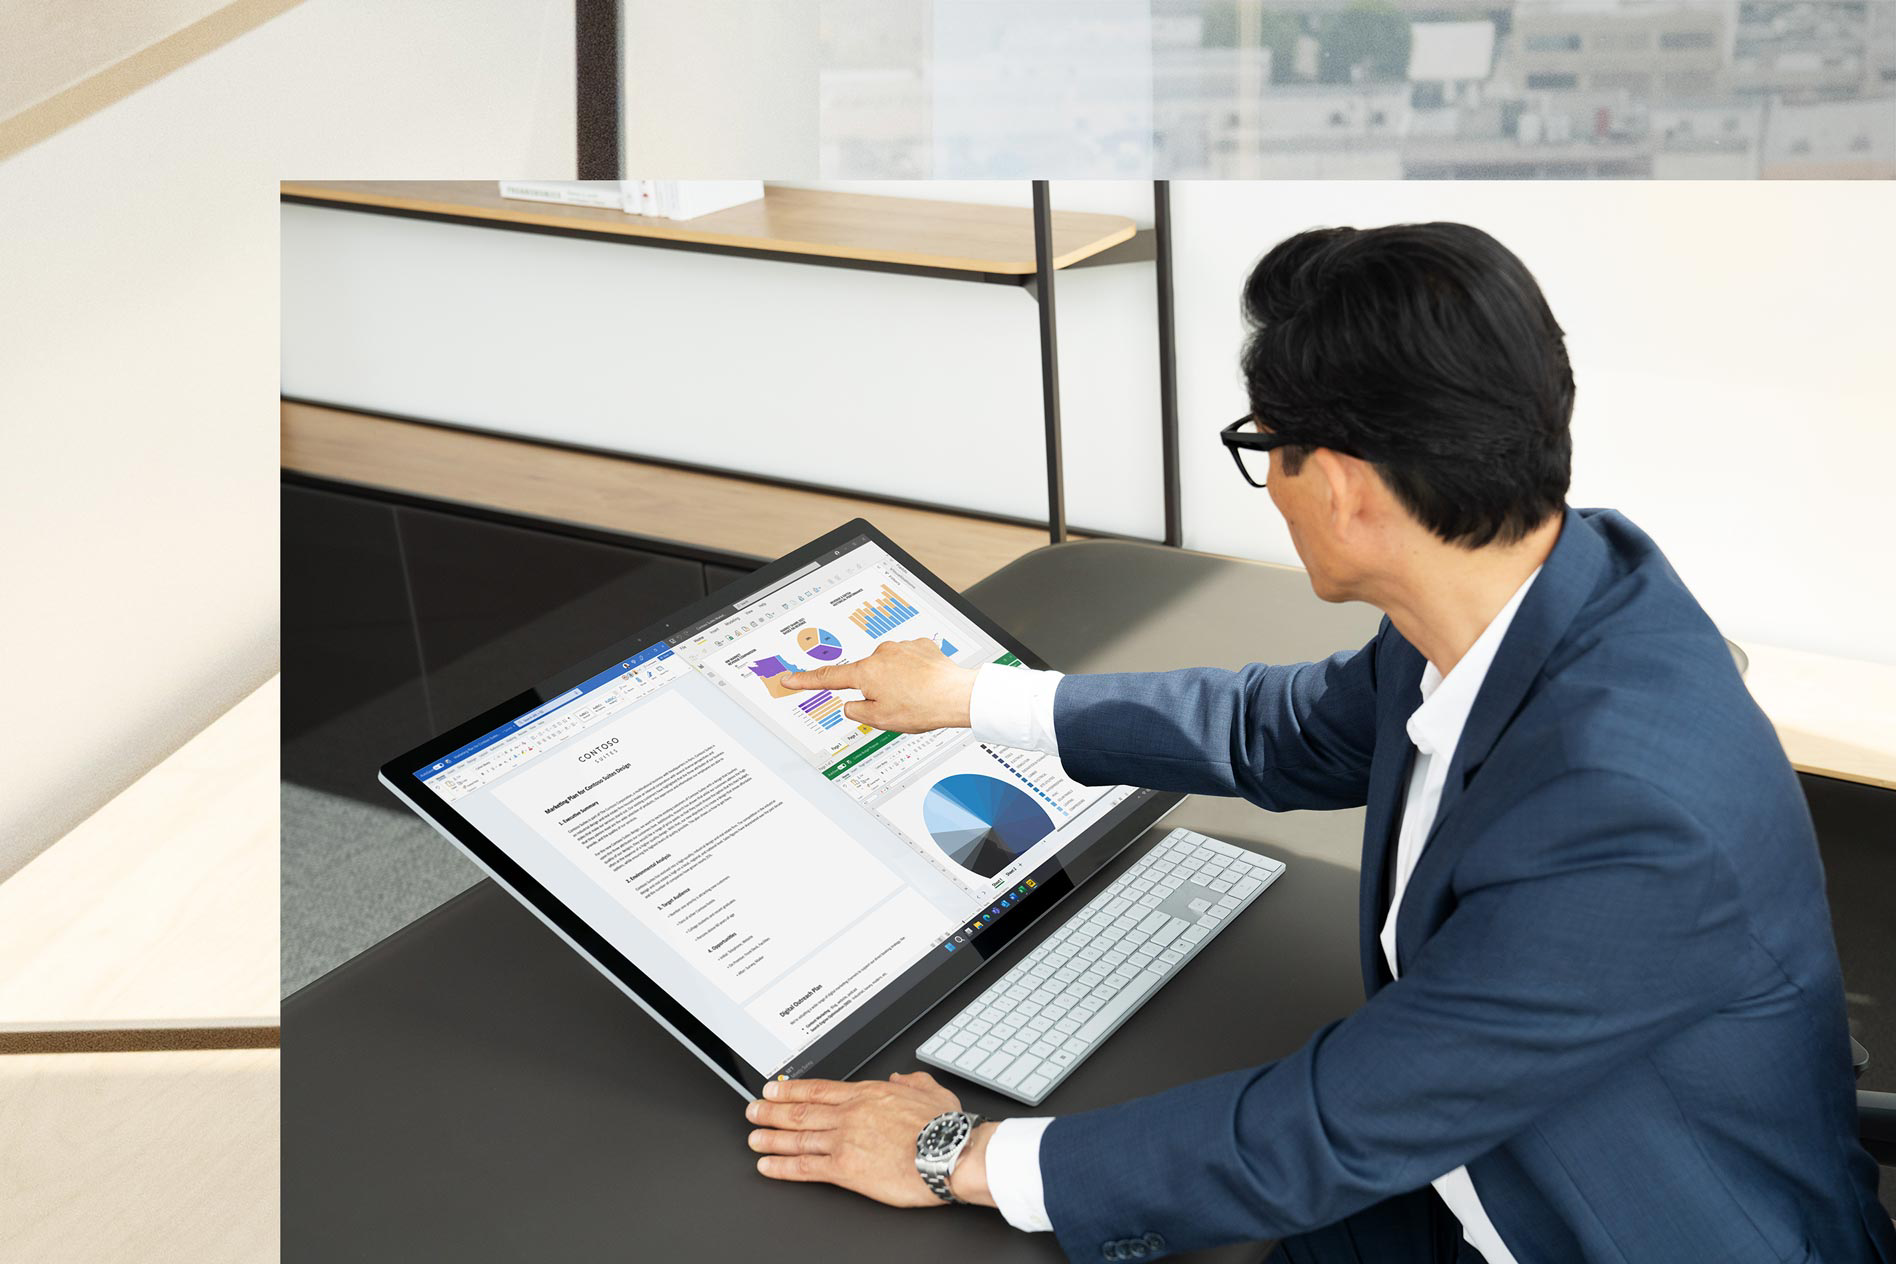 يظهر رجل يلمس شاشة Surface Studio 2+، وهو يجلس على مكتبه، لتقديم عرض عمل مع شاشة بعنوان "العودة إلى وضع الاستوديو".